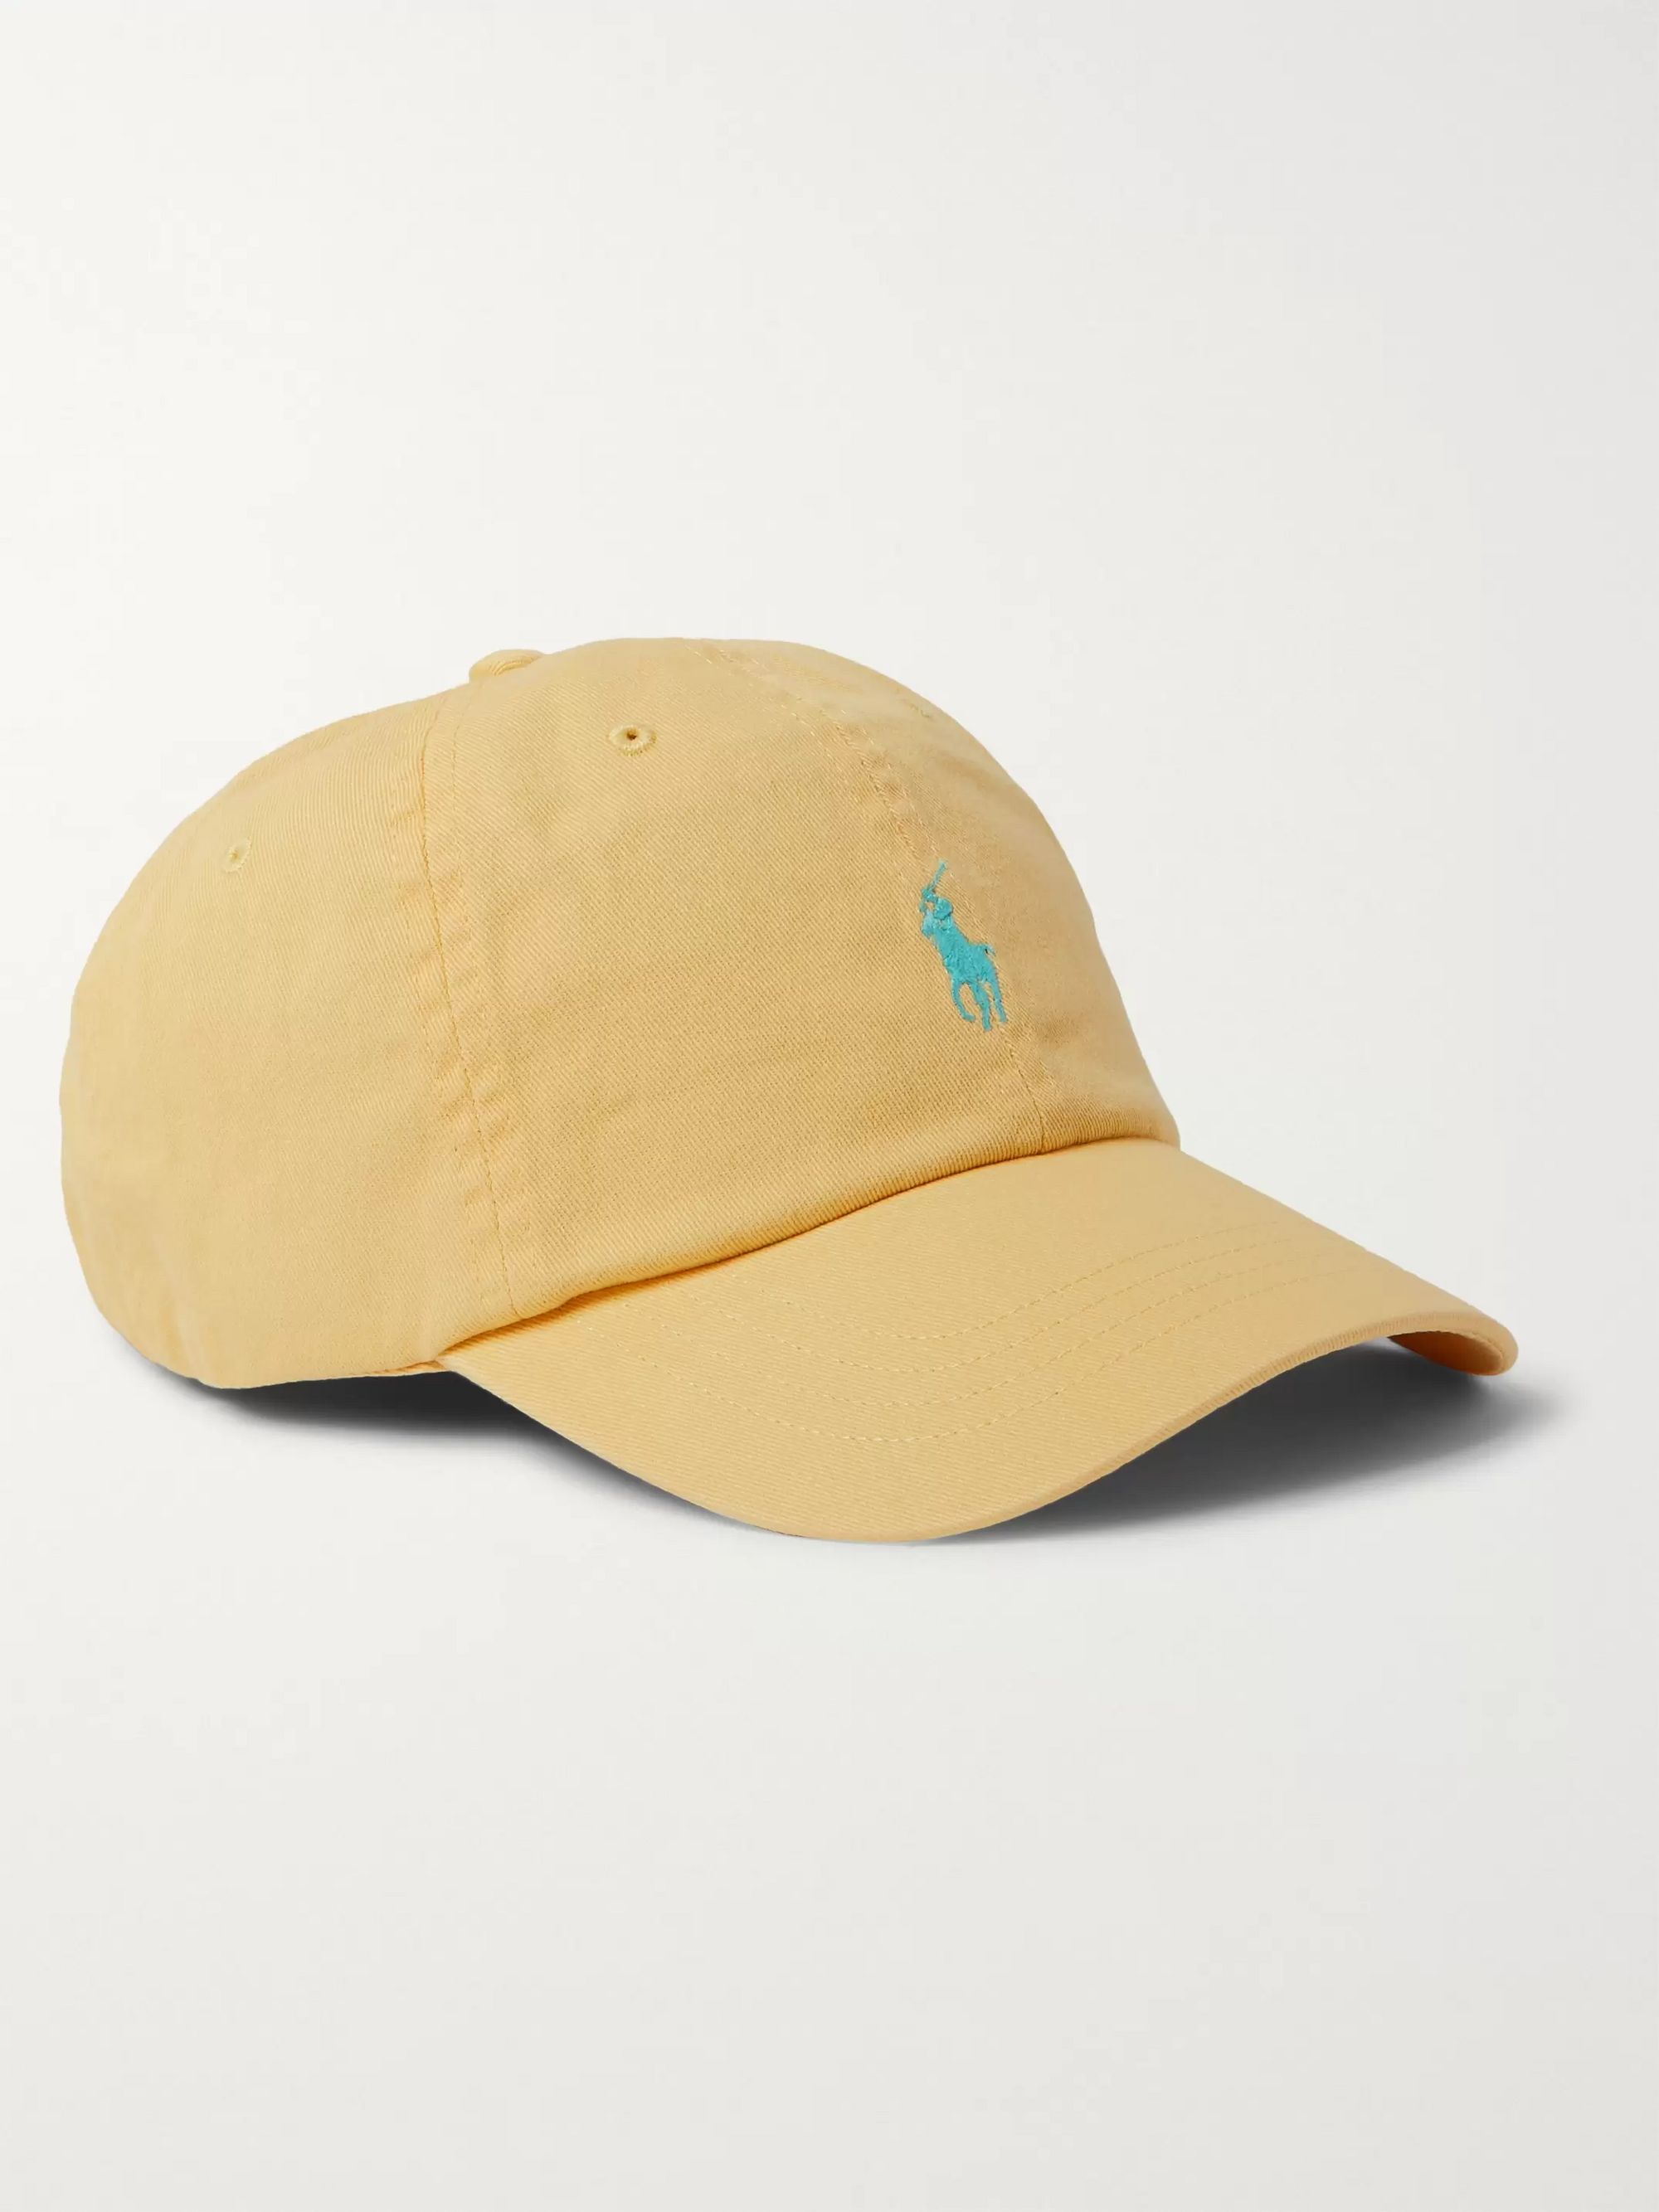 ralph lauren yellow cap